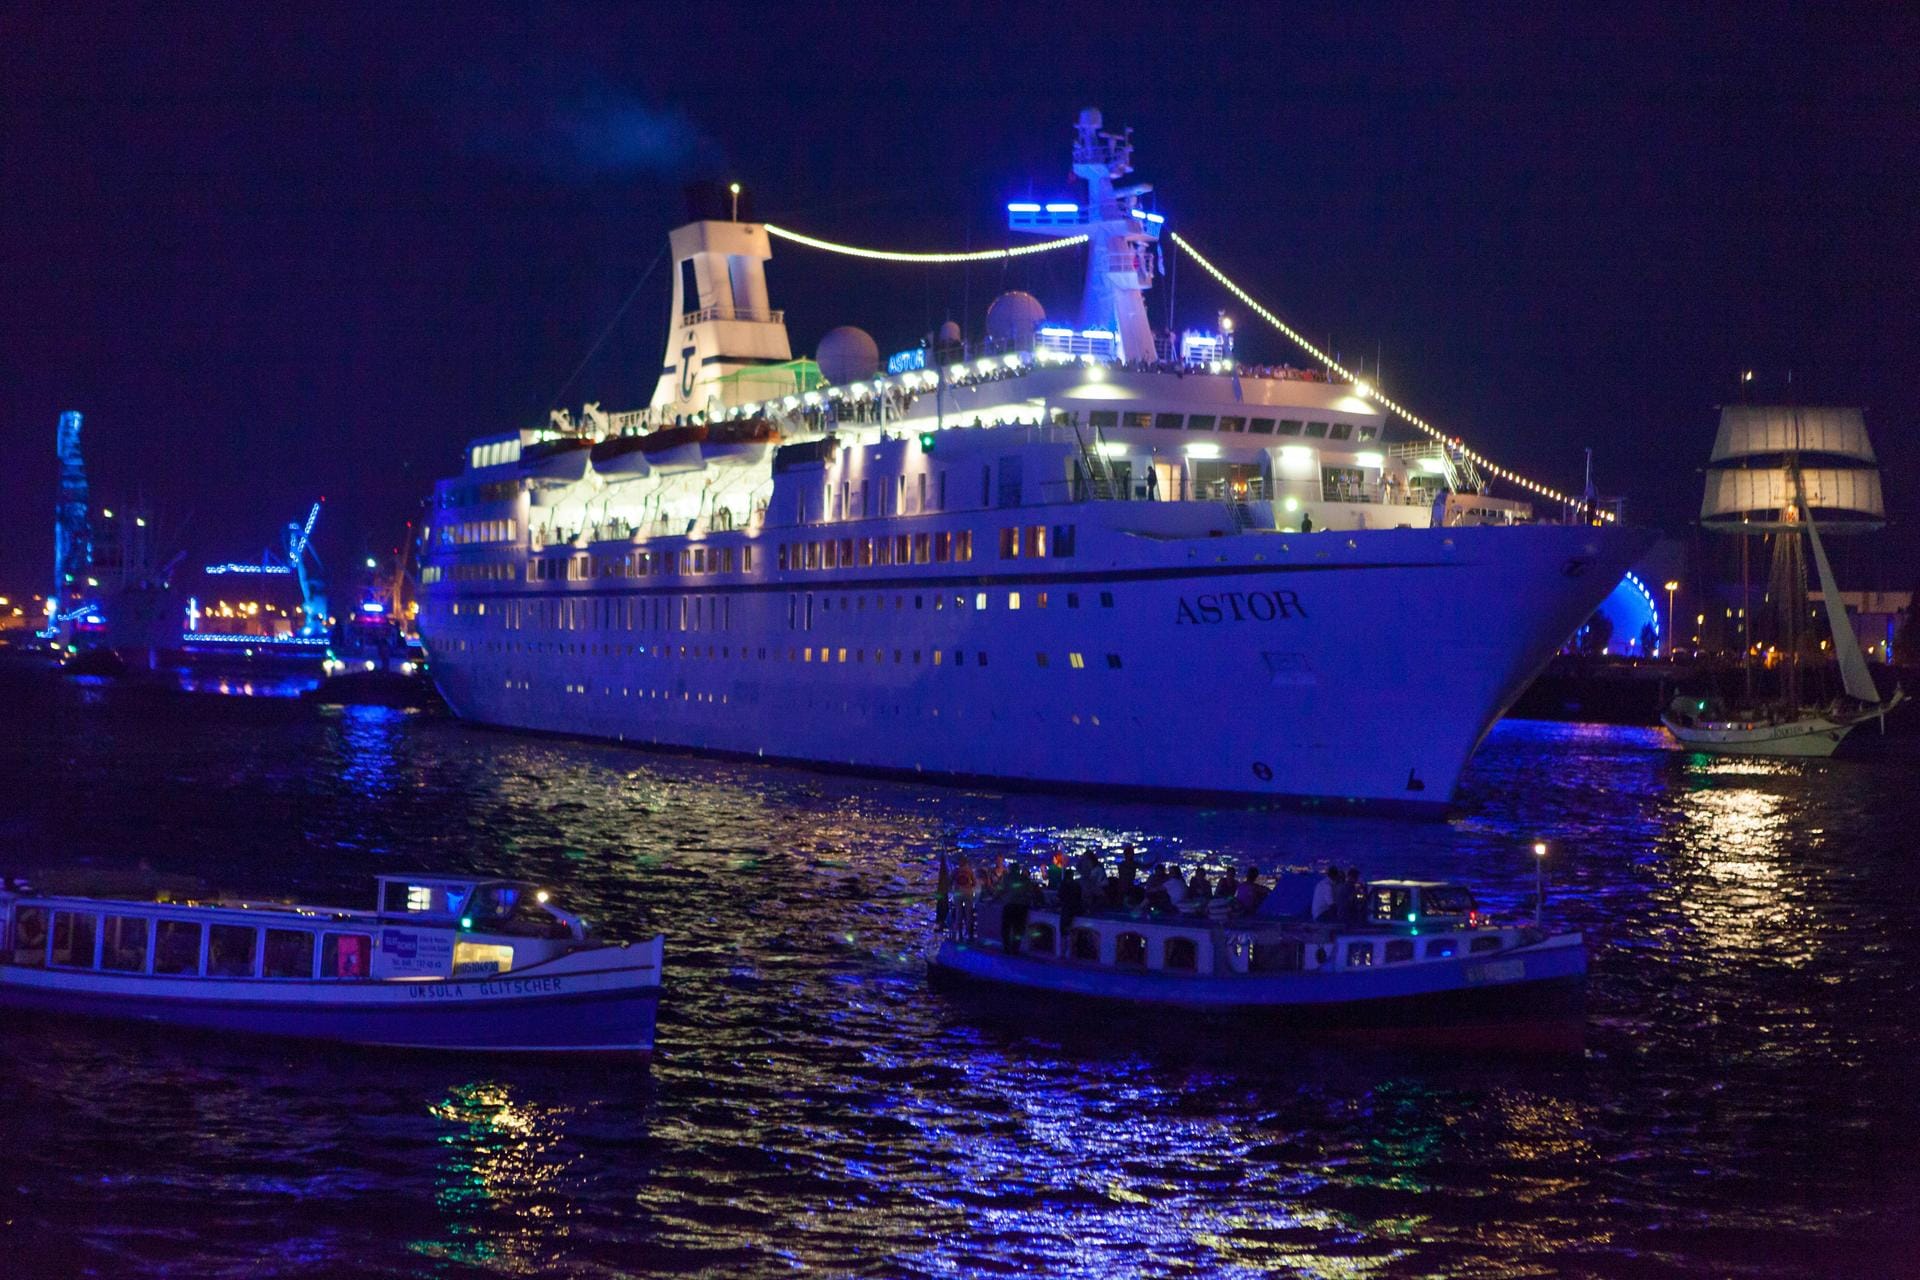 Die "Astor" war schon öfter Gast im Hamburger Hafen, wie hier 2012. Auch sie ist beim Hafengeburtstag vom 5. bis 8. Mai 2016 dabei.